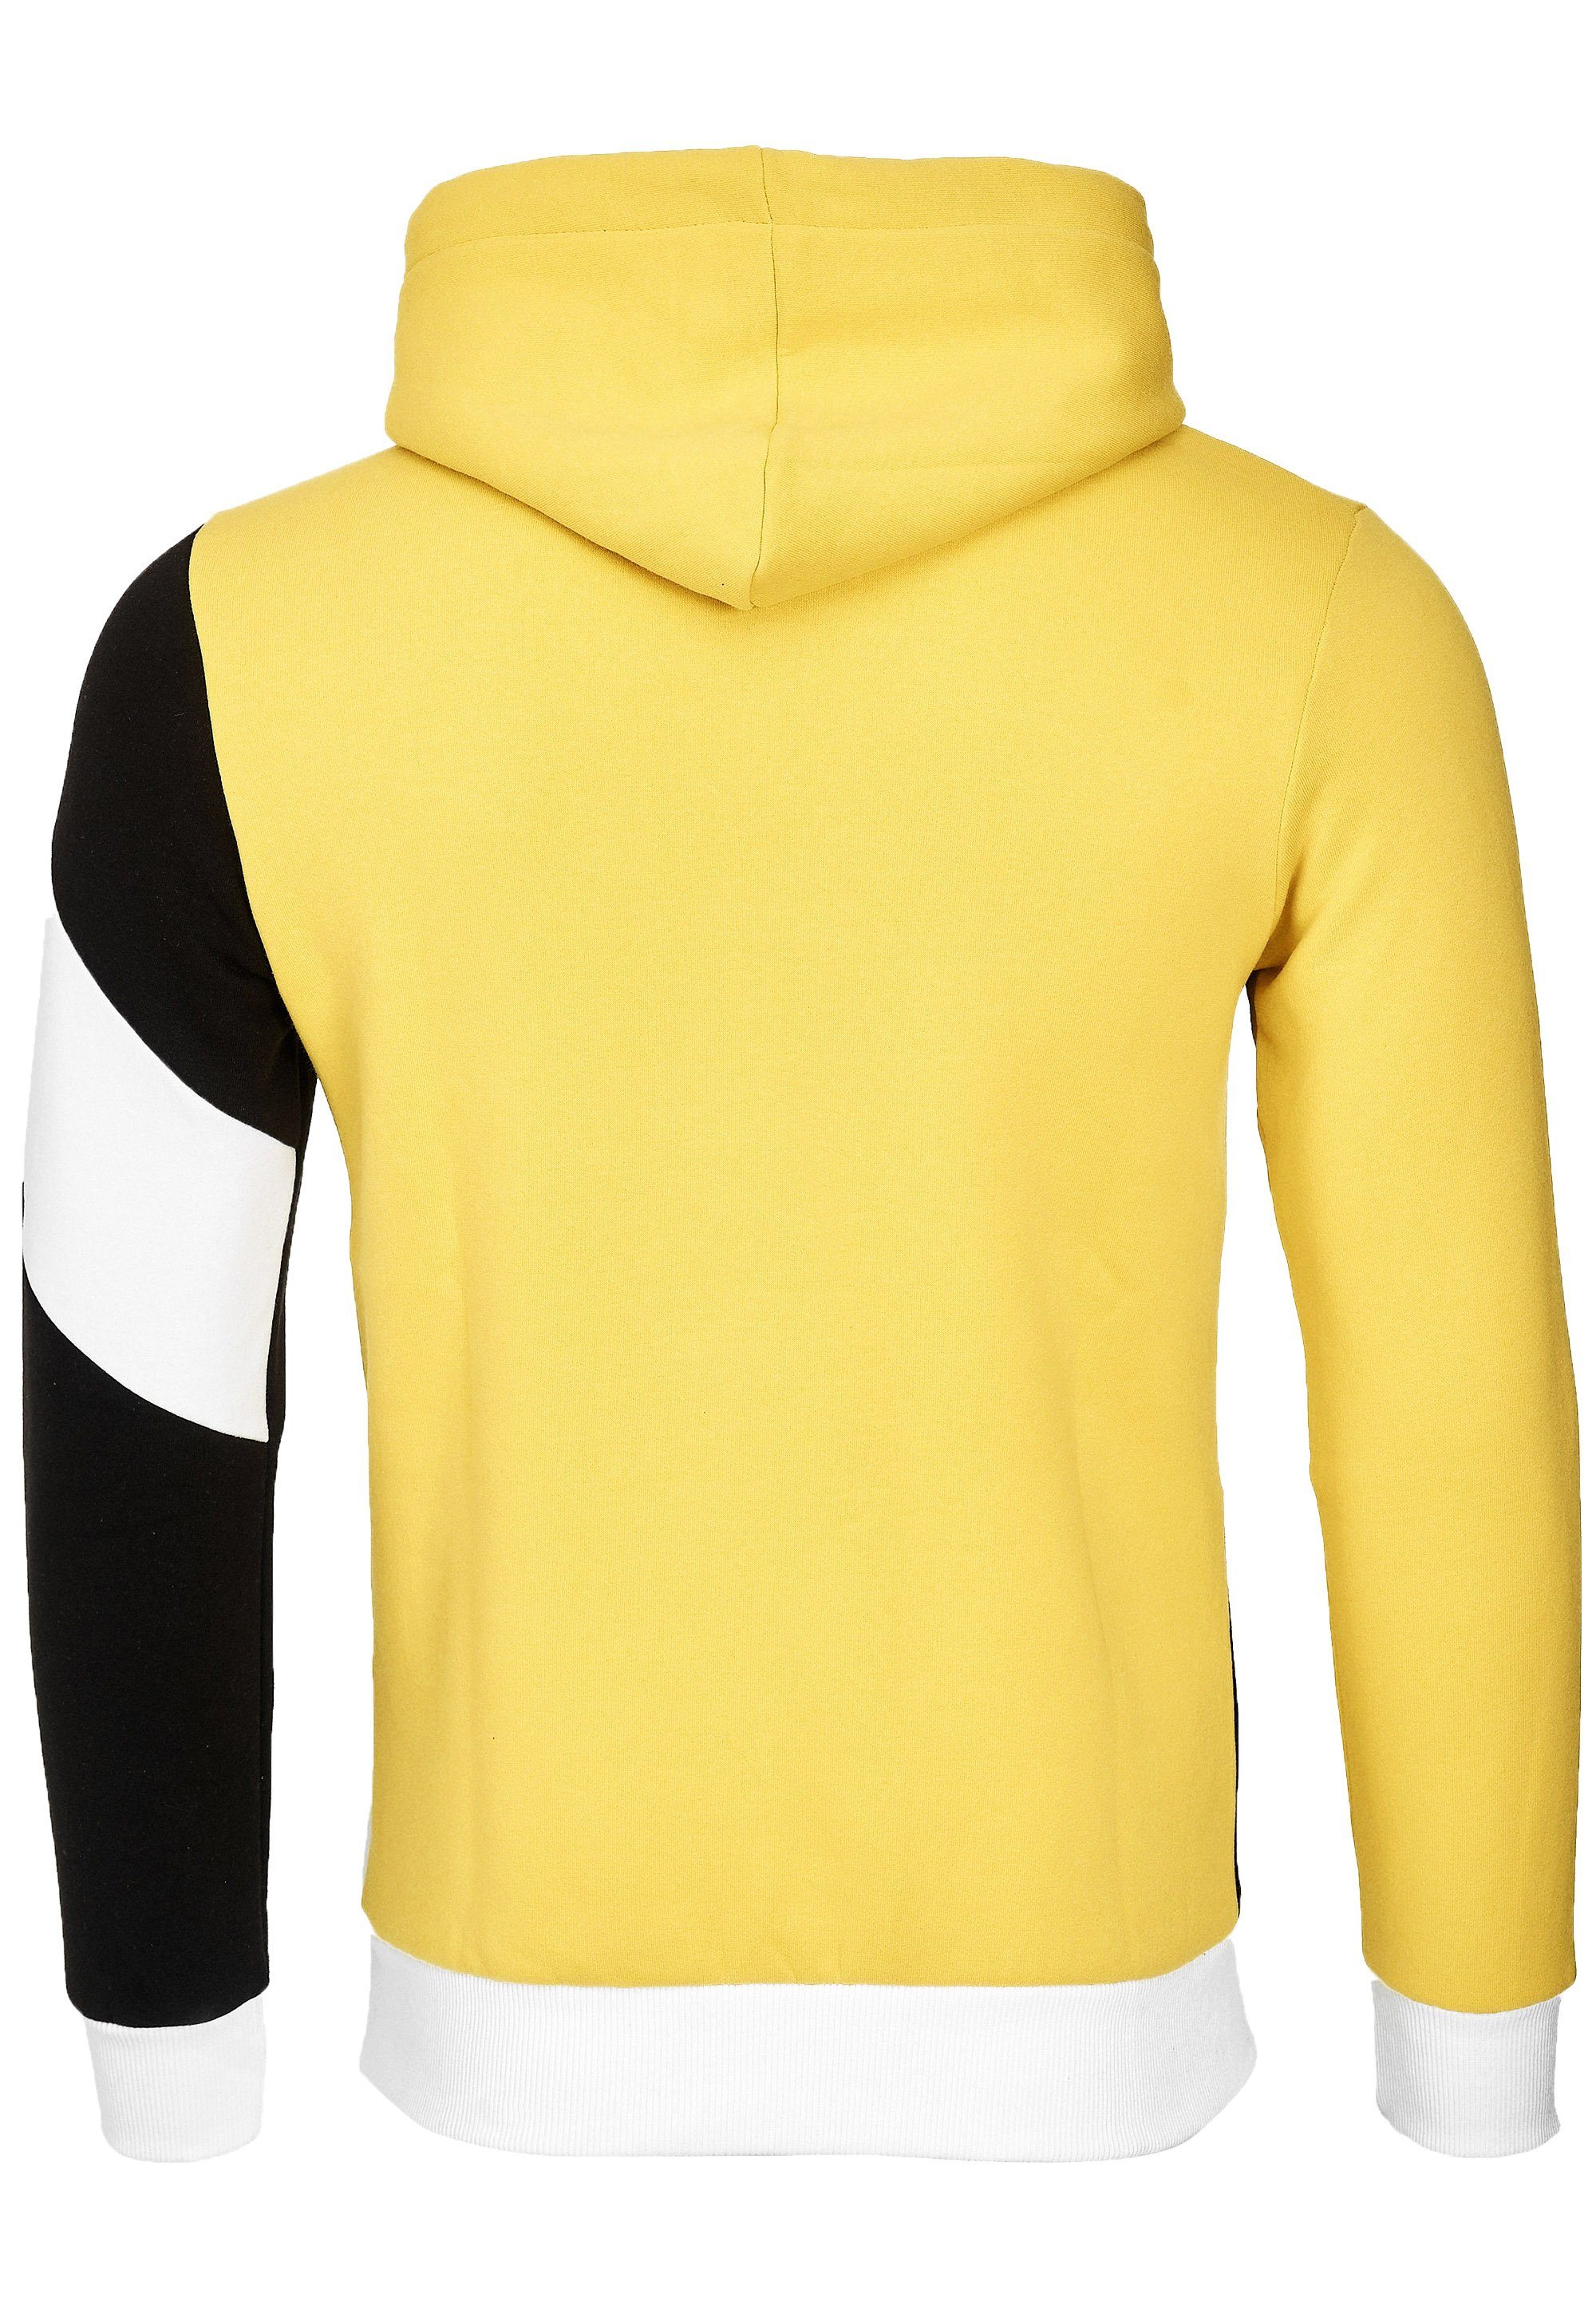 Rusty Neal Kapuzensweatshirt in sportlichem gelb-schwarz Design